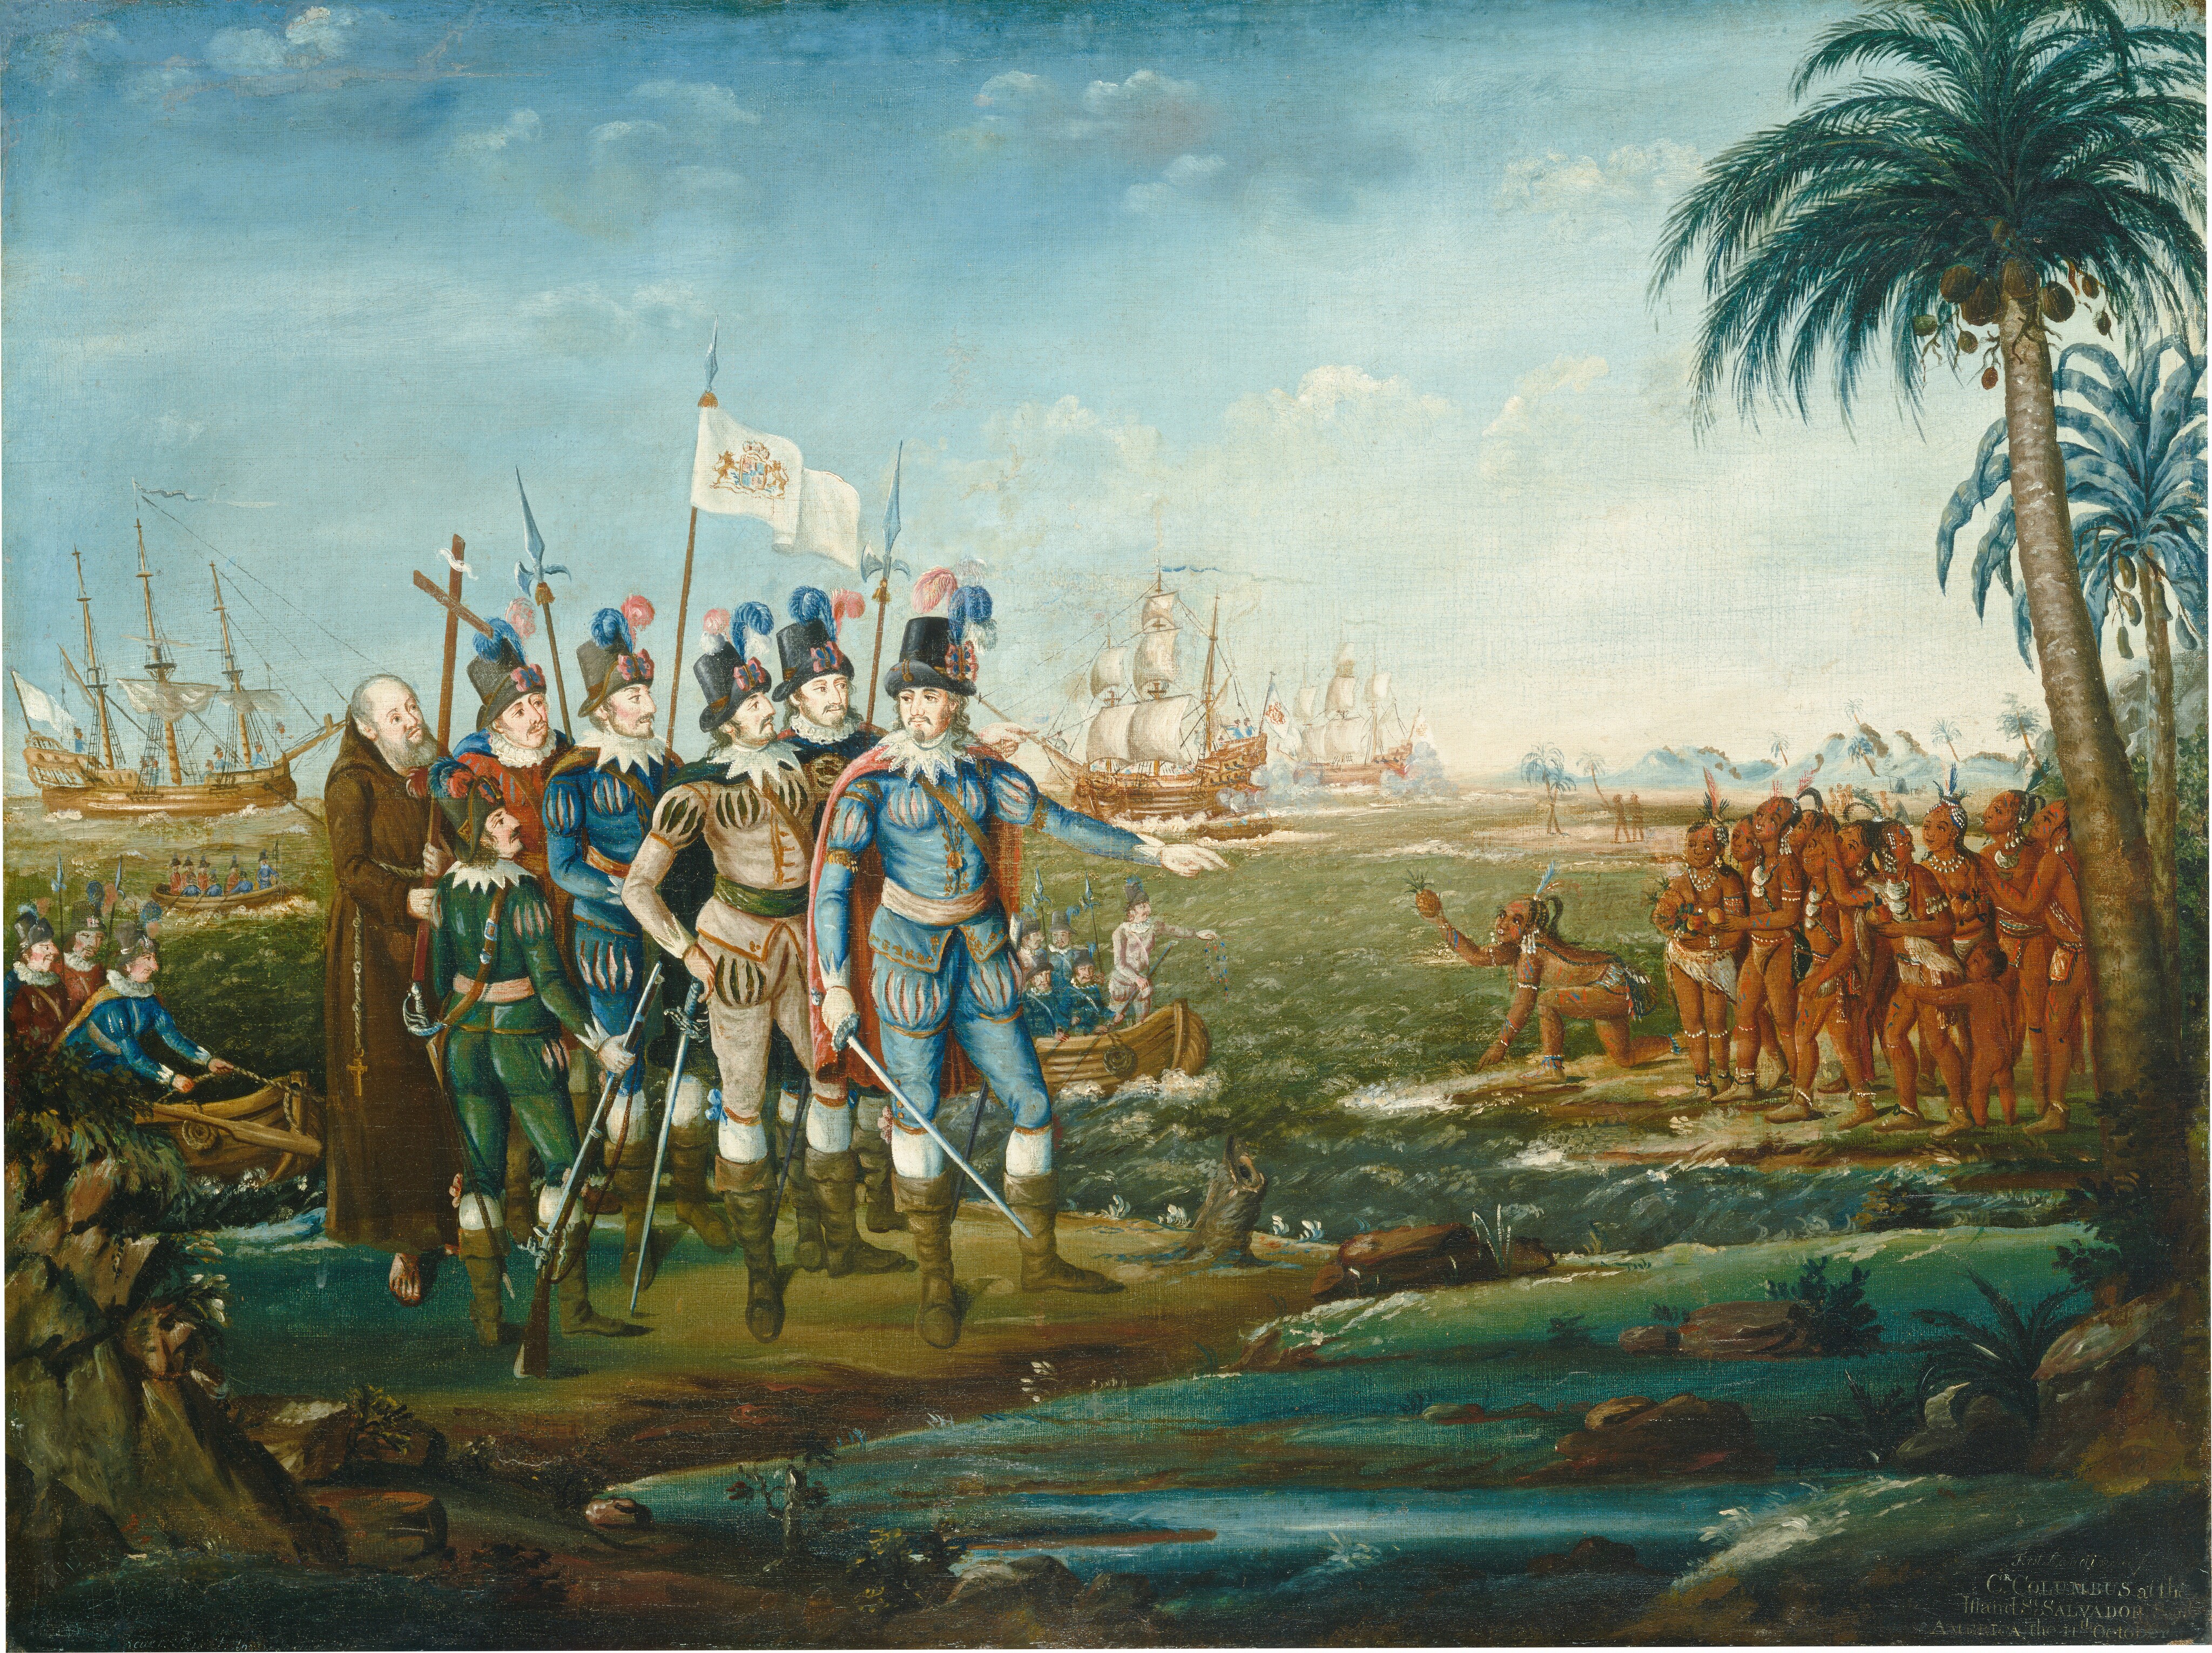 Первый европеец посетивший карибские острова южную америку. 1492 Колумб.